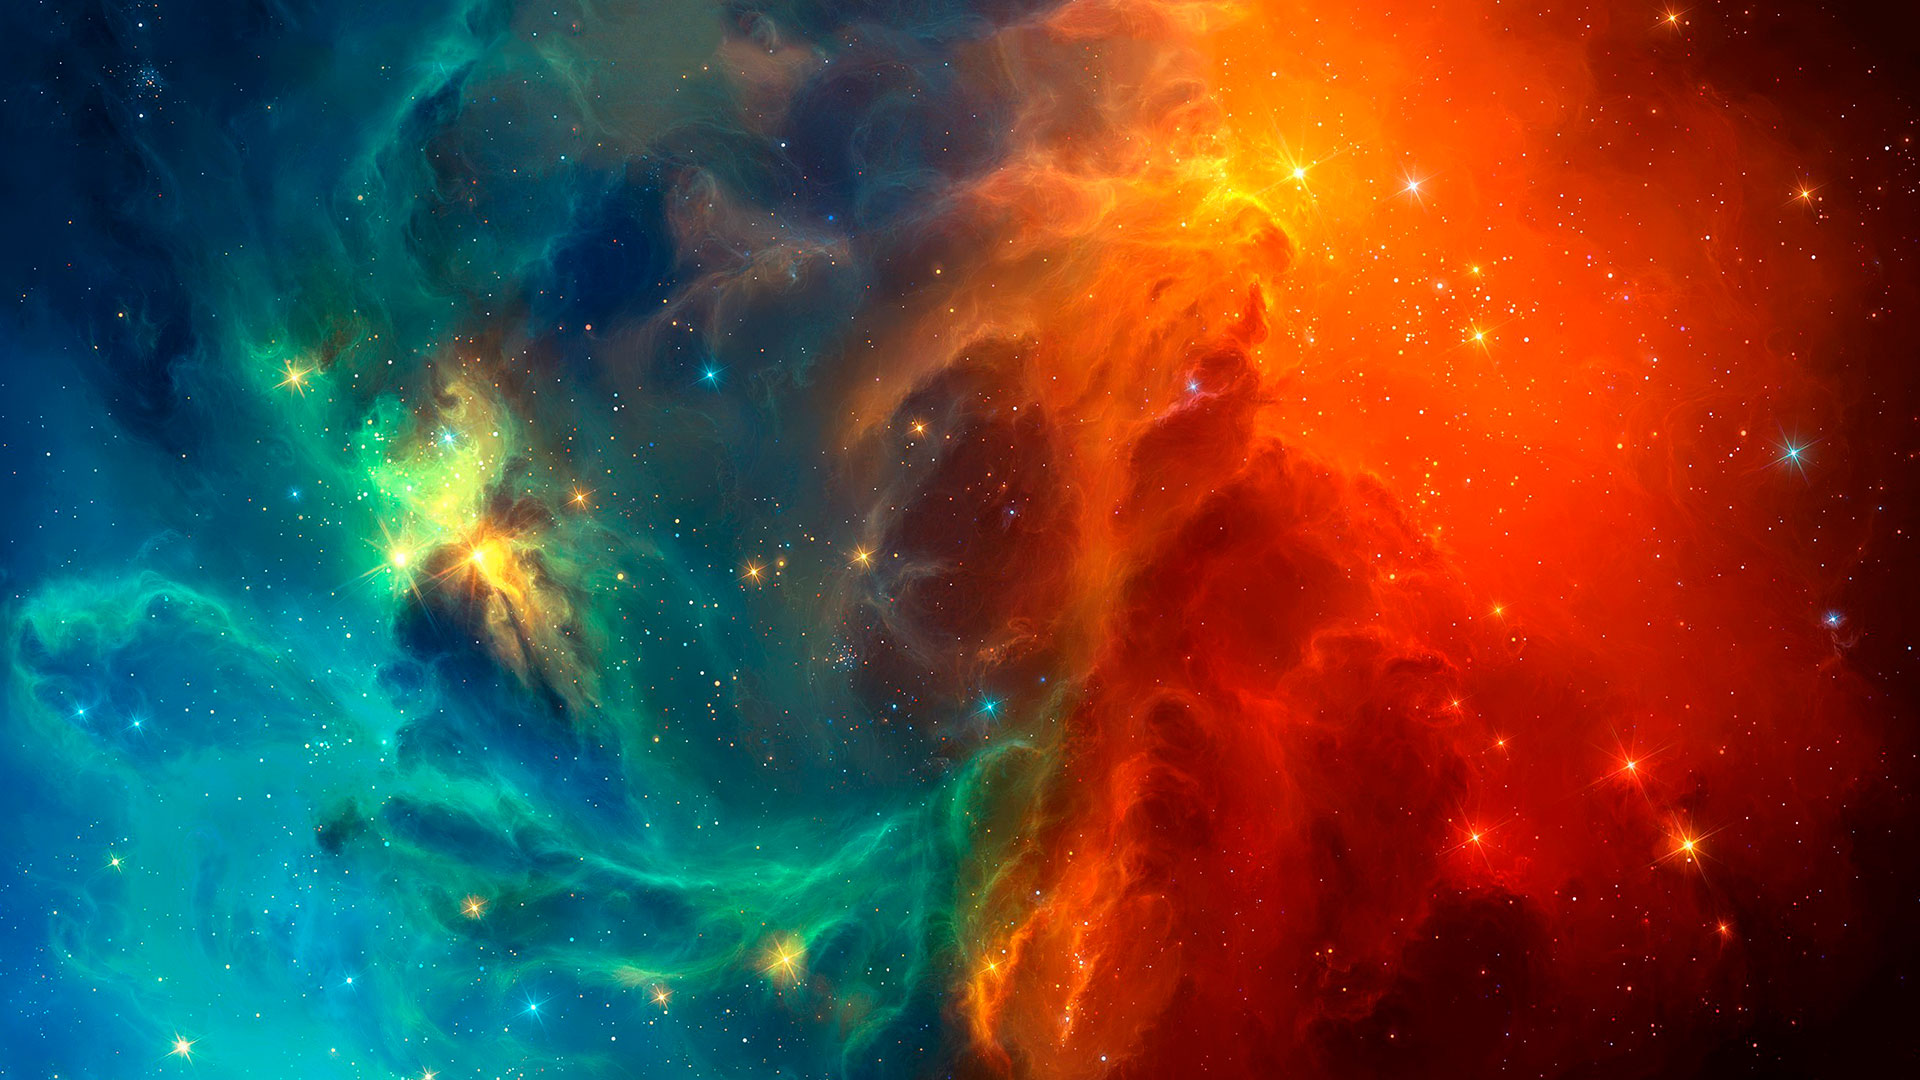 colorful hd nebula image